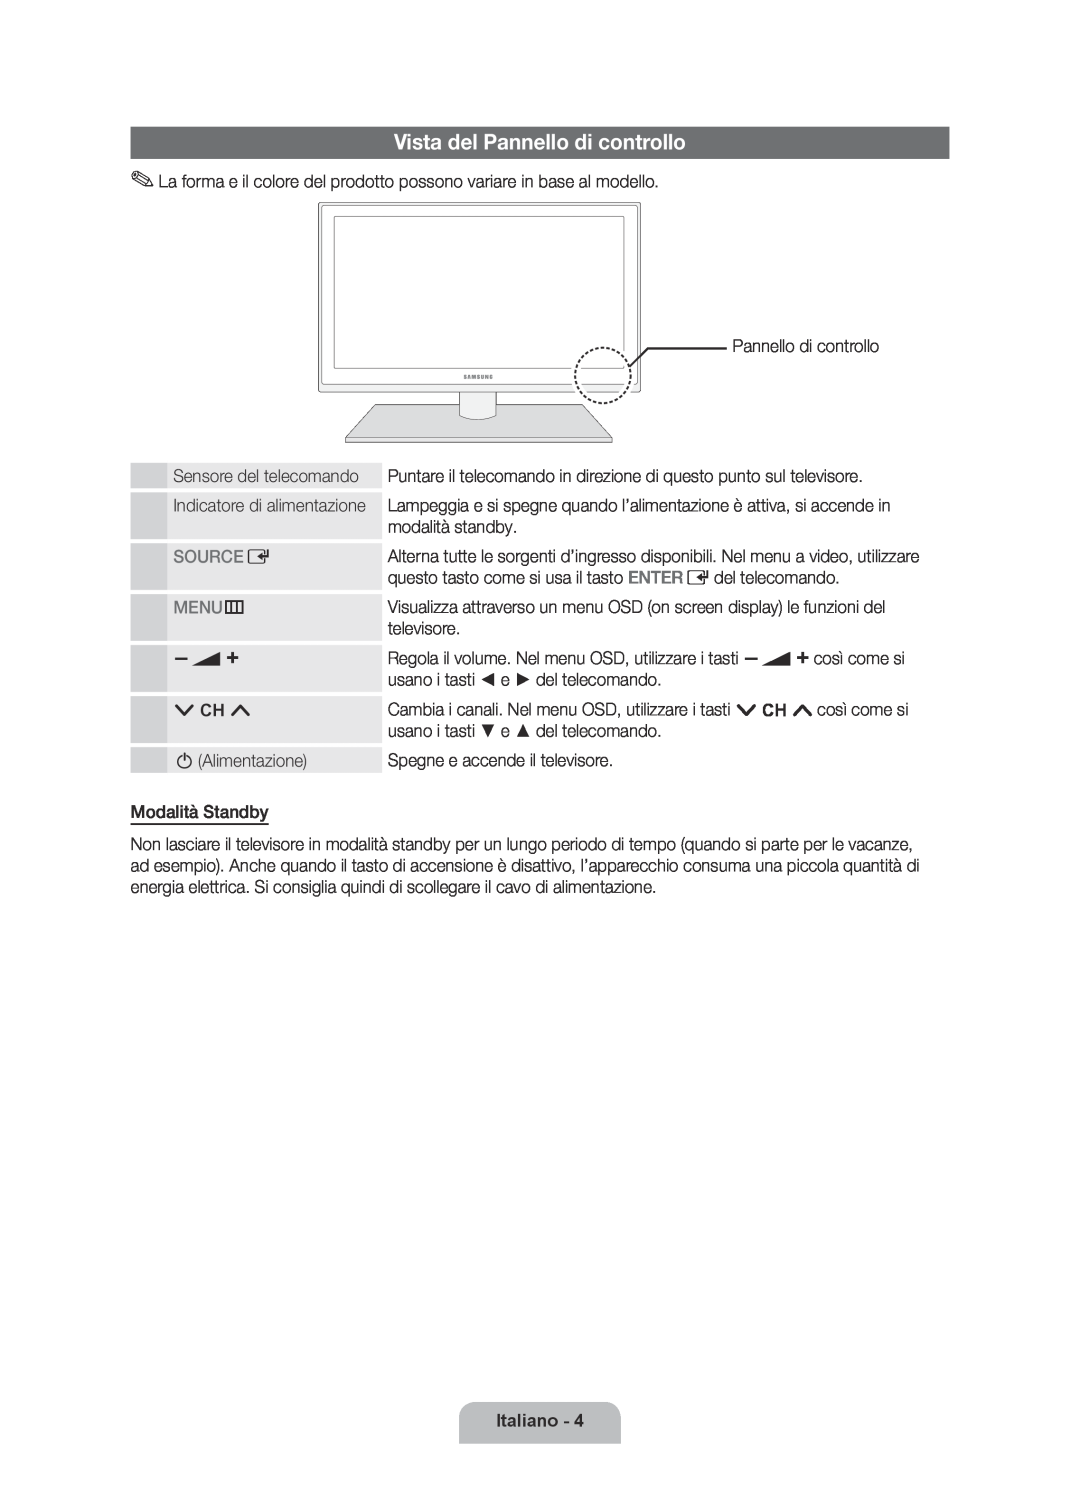 Samsung UE32D6000TPXZT manual Vista del Pannello di controllo, Source E, MENU m, Italiano, Indicatore di alimentazione 